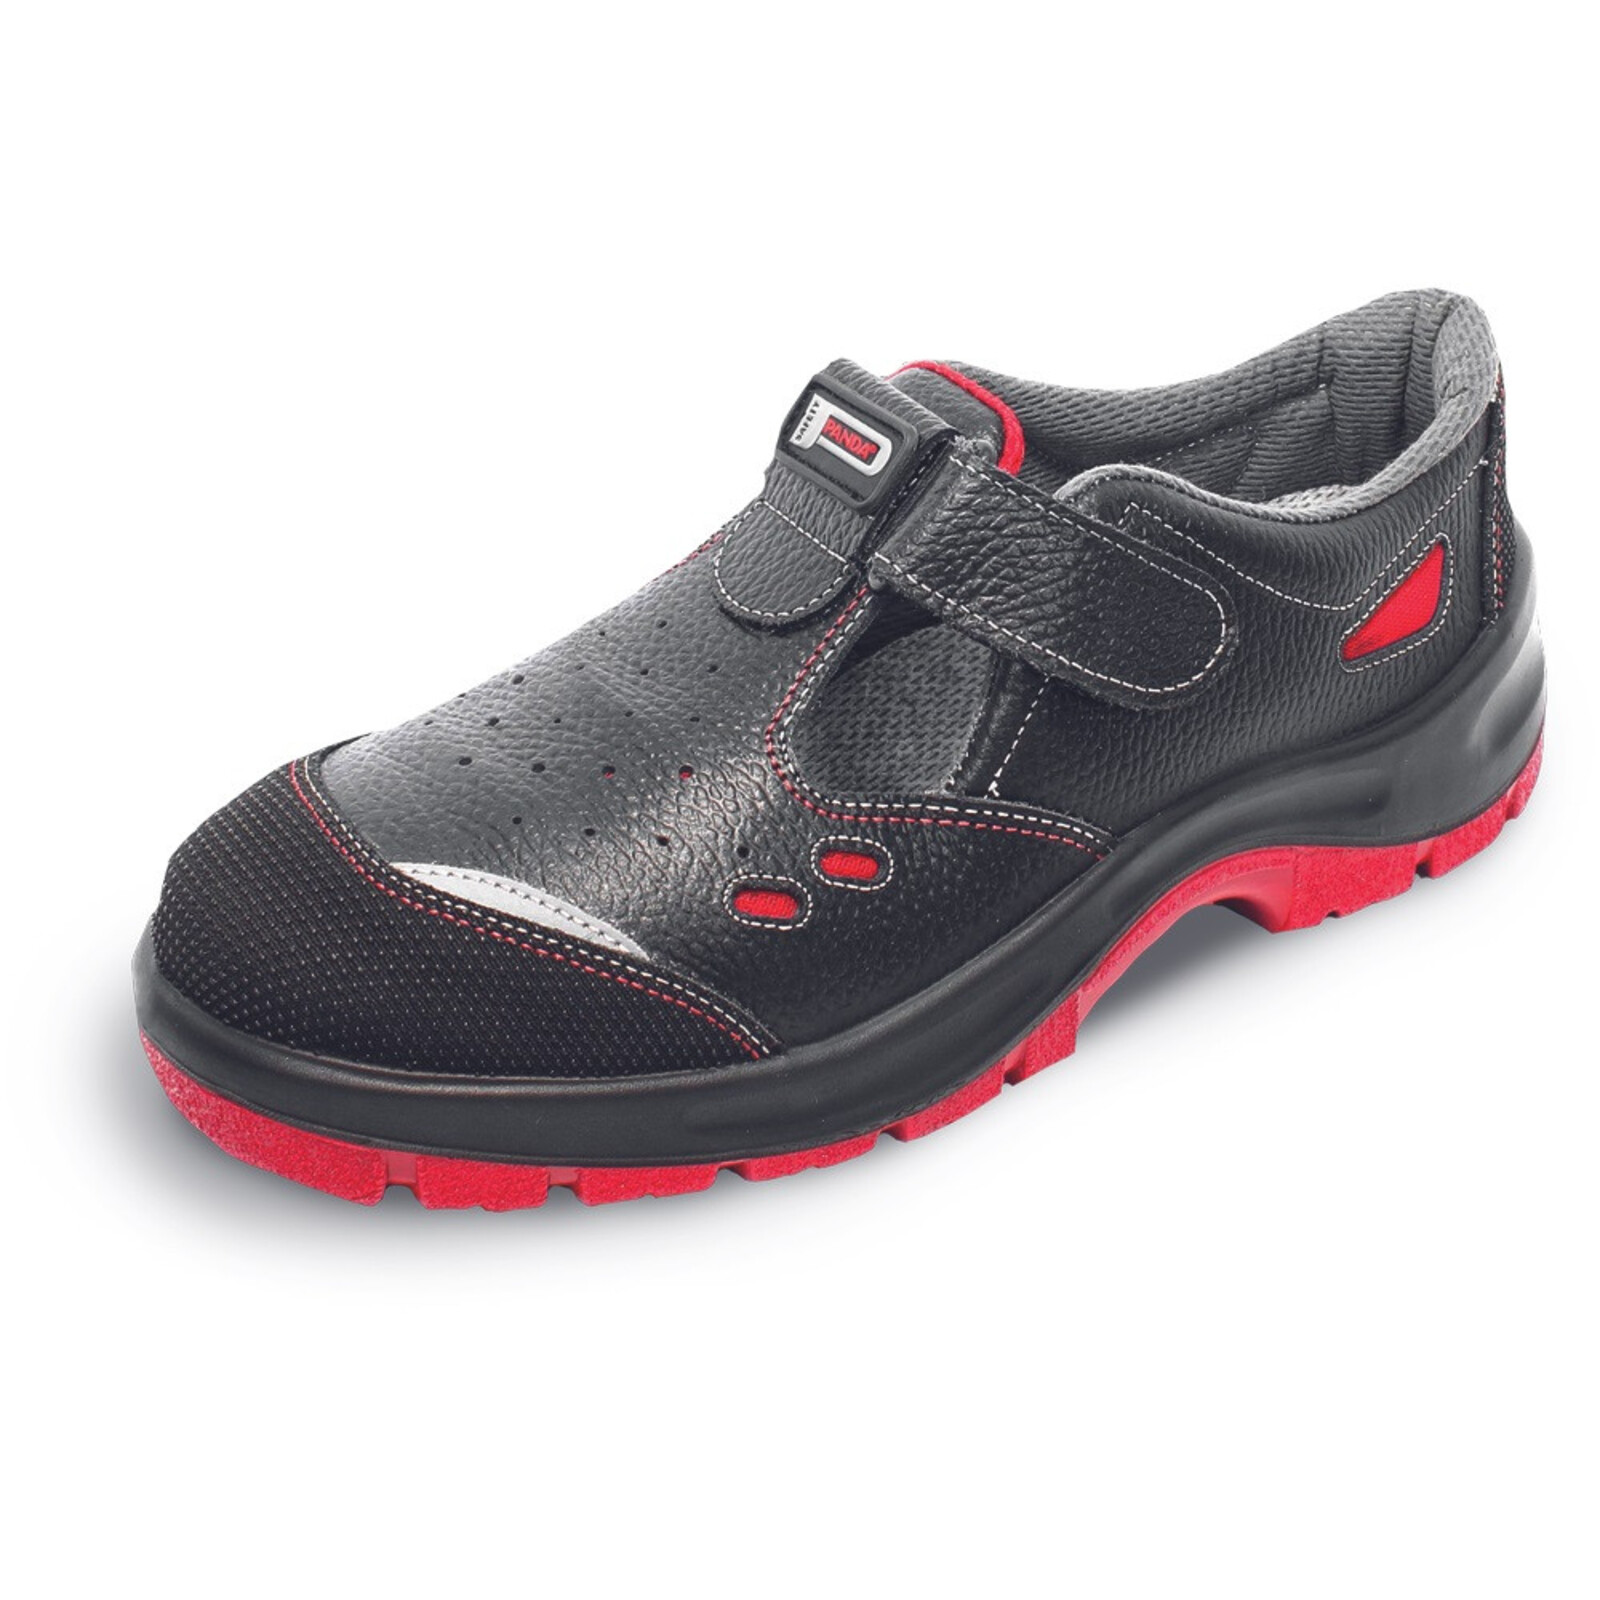 Bezpečnostné sandále Panda Strong Nuovo Topolino MF S1 SRC - veľkosť: 35, farba: čierna/červená